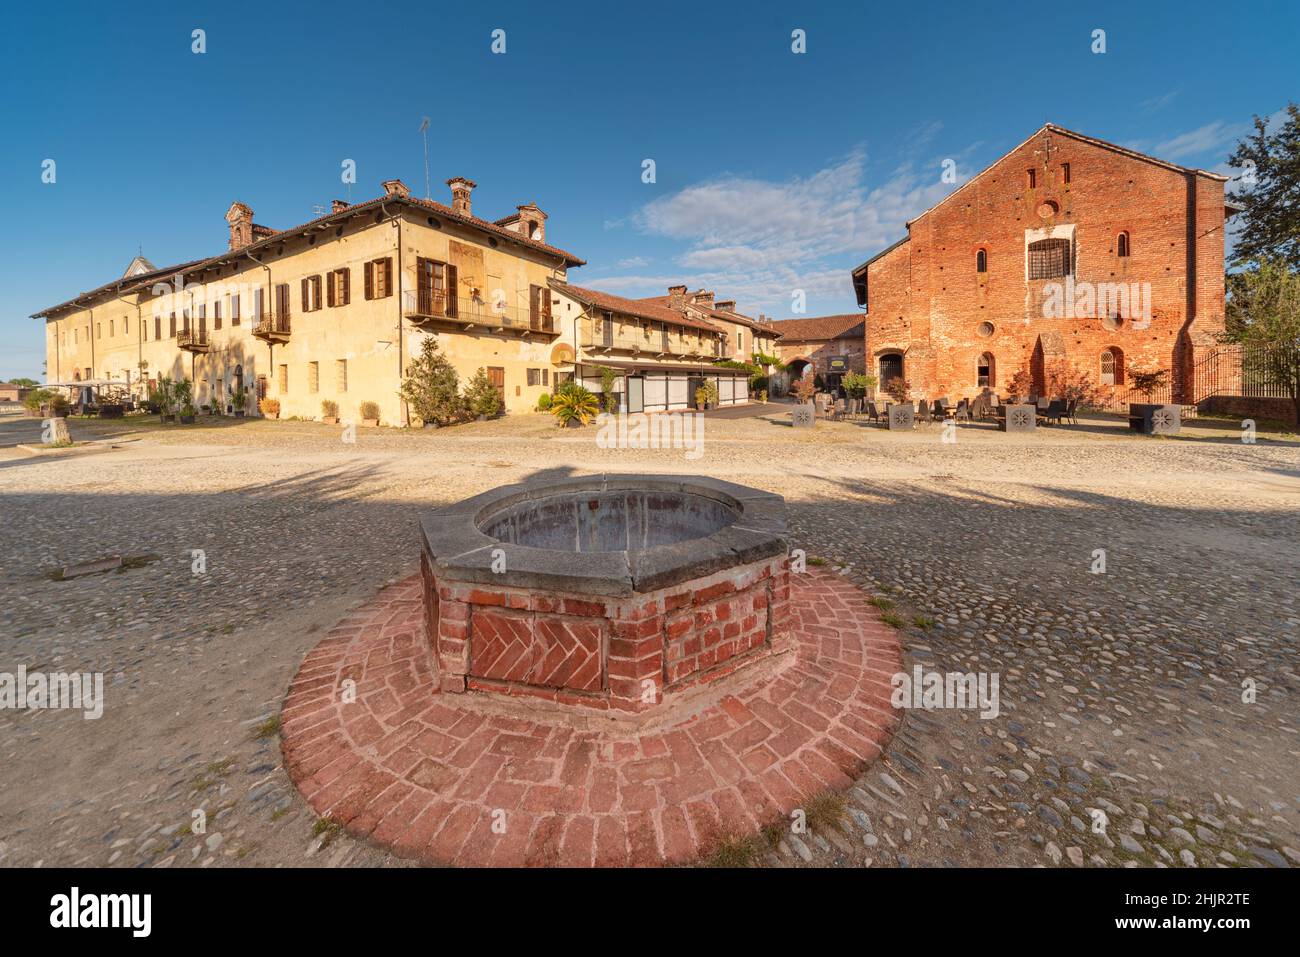 Staffarda di Revello, Saluzzo, Italia - 8 de octubre de 2021: La casa de huéspedes de la Abadía de Staffarda con el refectorio, dormitorio, refugio de caballos y el pozo en th Foto de stock